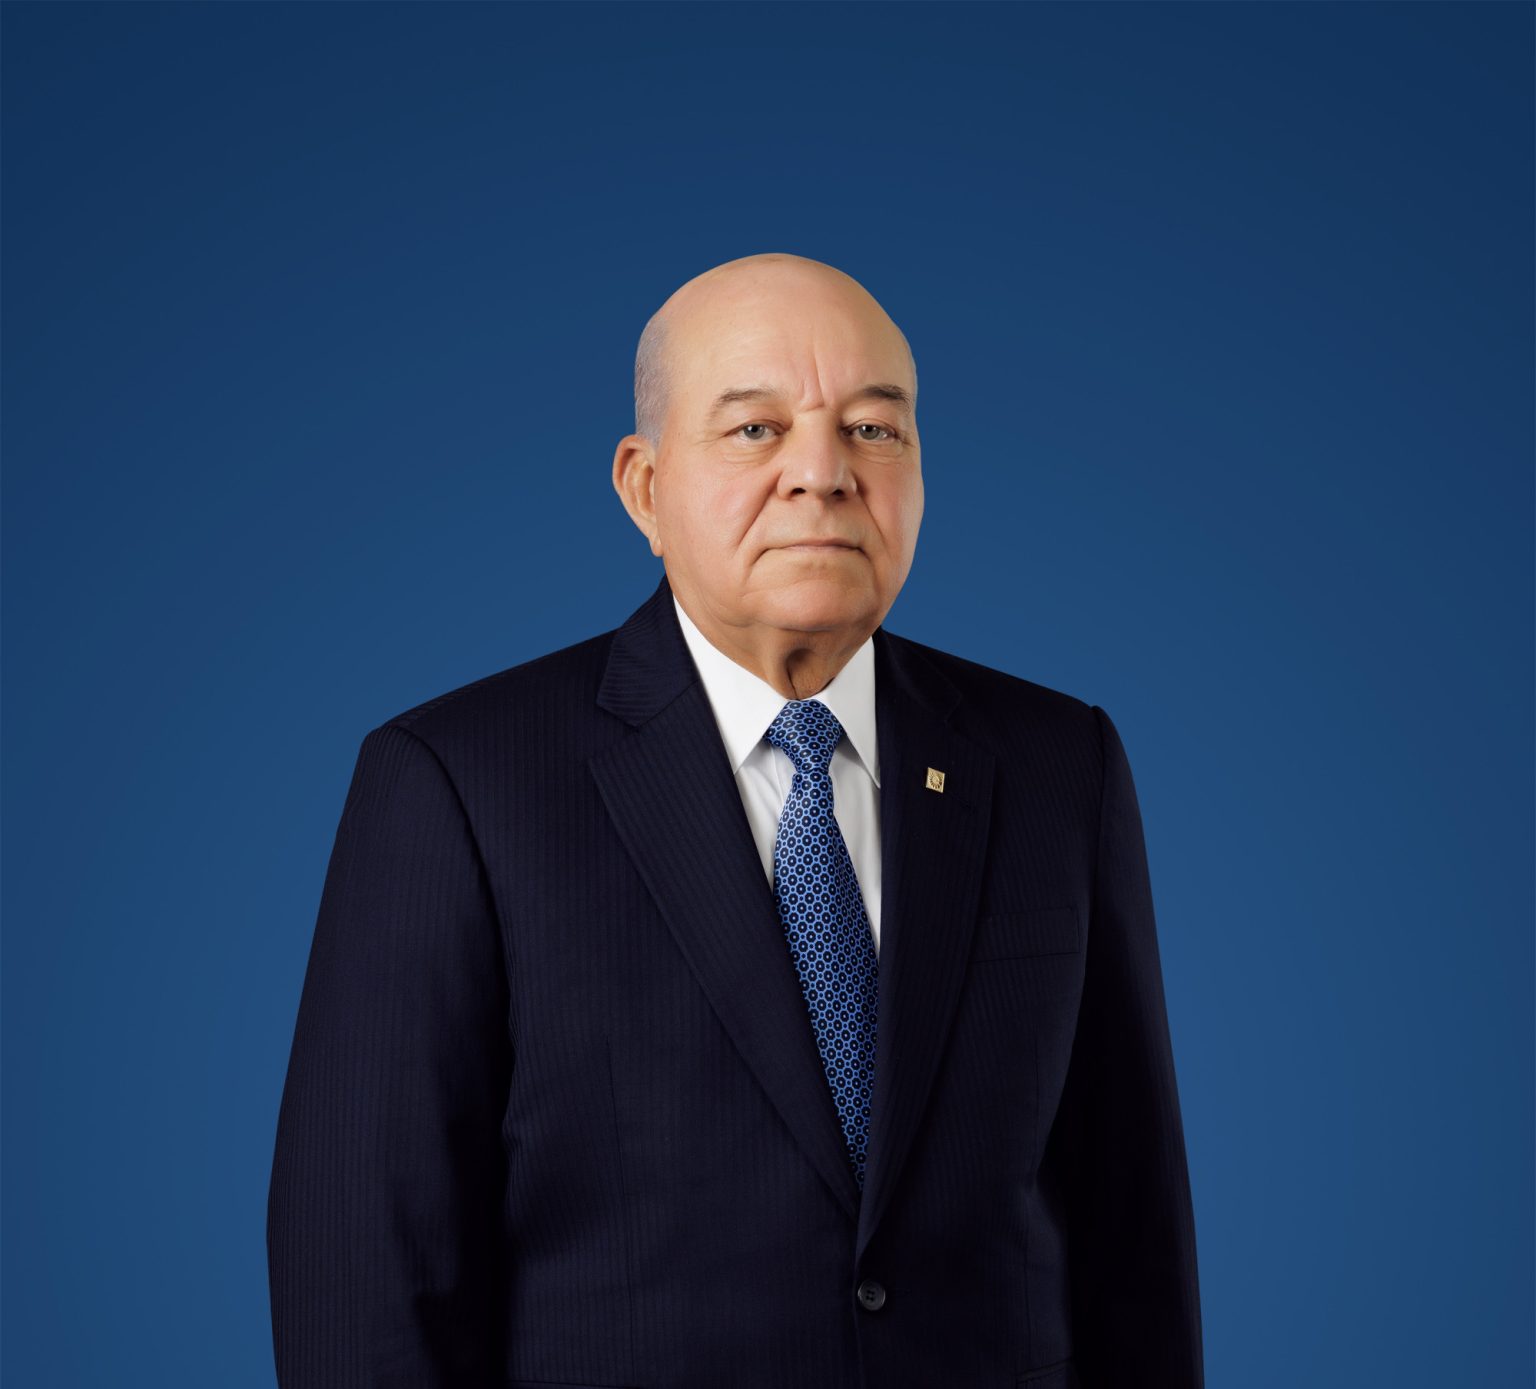 Manuel E. Jimenez F. presidente ejecutivo de Grupo Popular casa matriz de AFI Popular